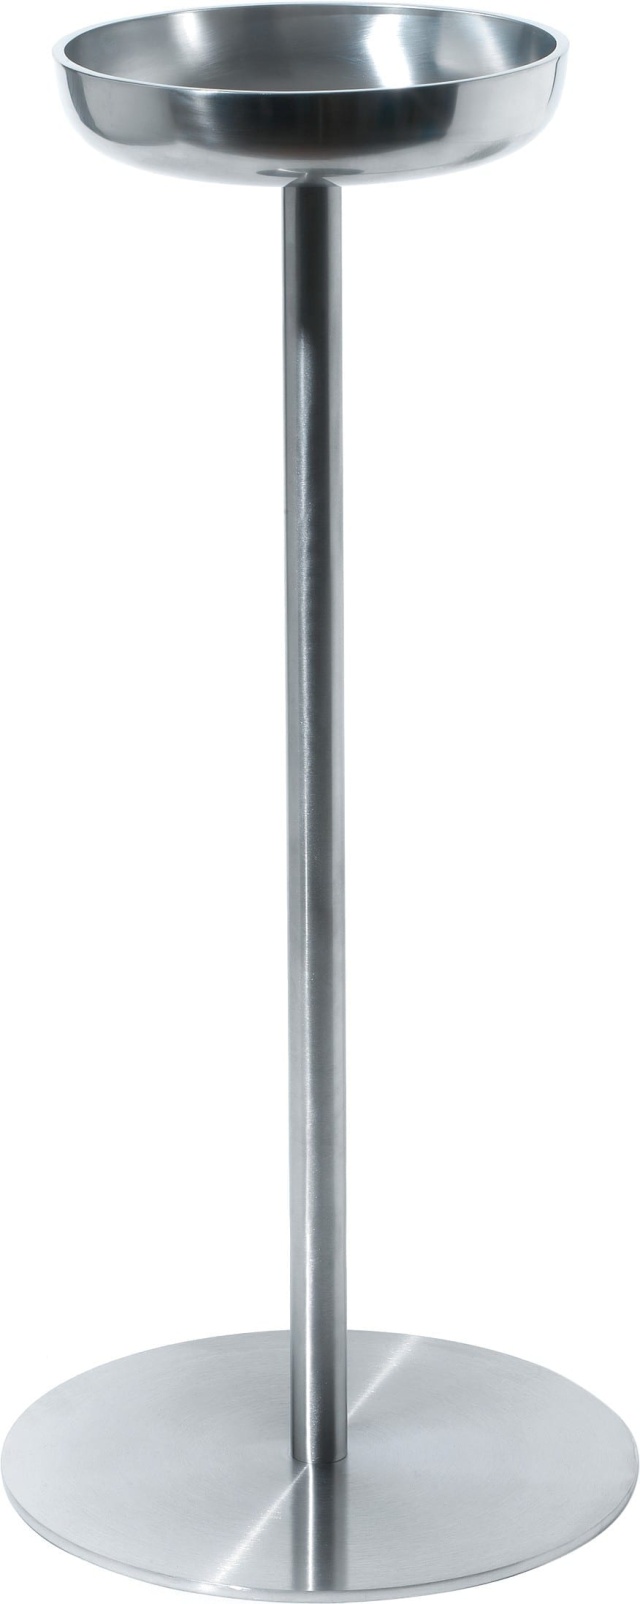 Ständer für Weinkühler, Ø28 cm - Alessi